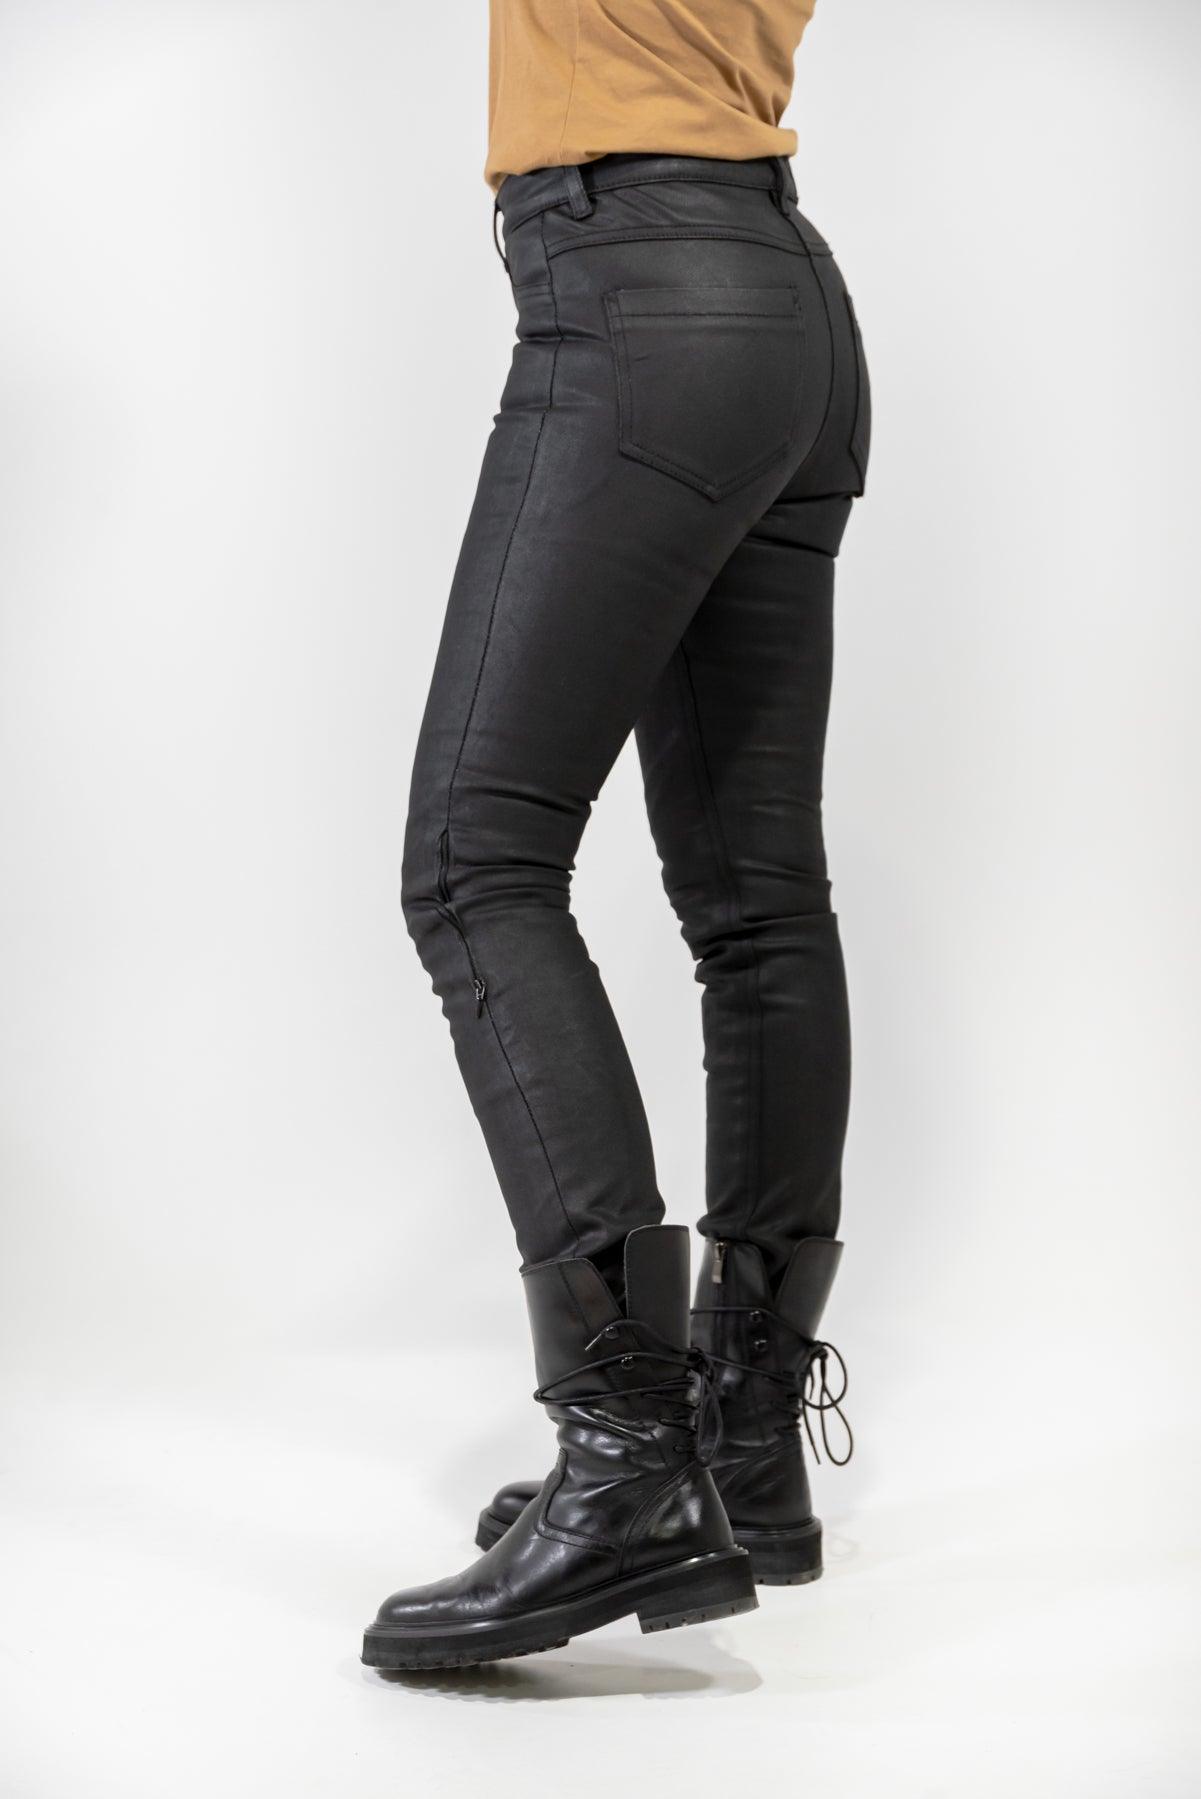 Venus Reinforced Motorcycle Jeans - Black Wax